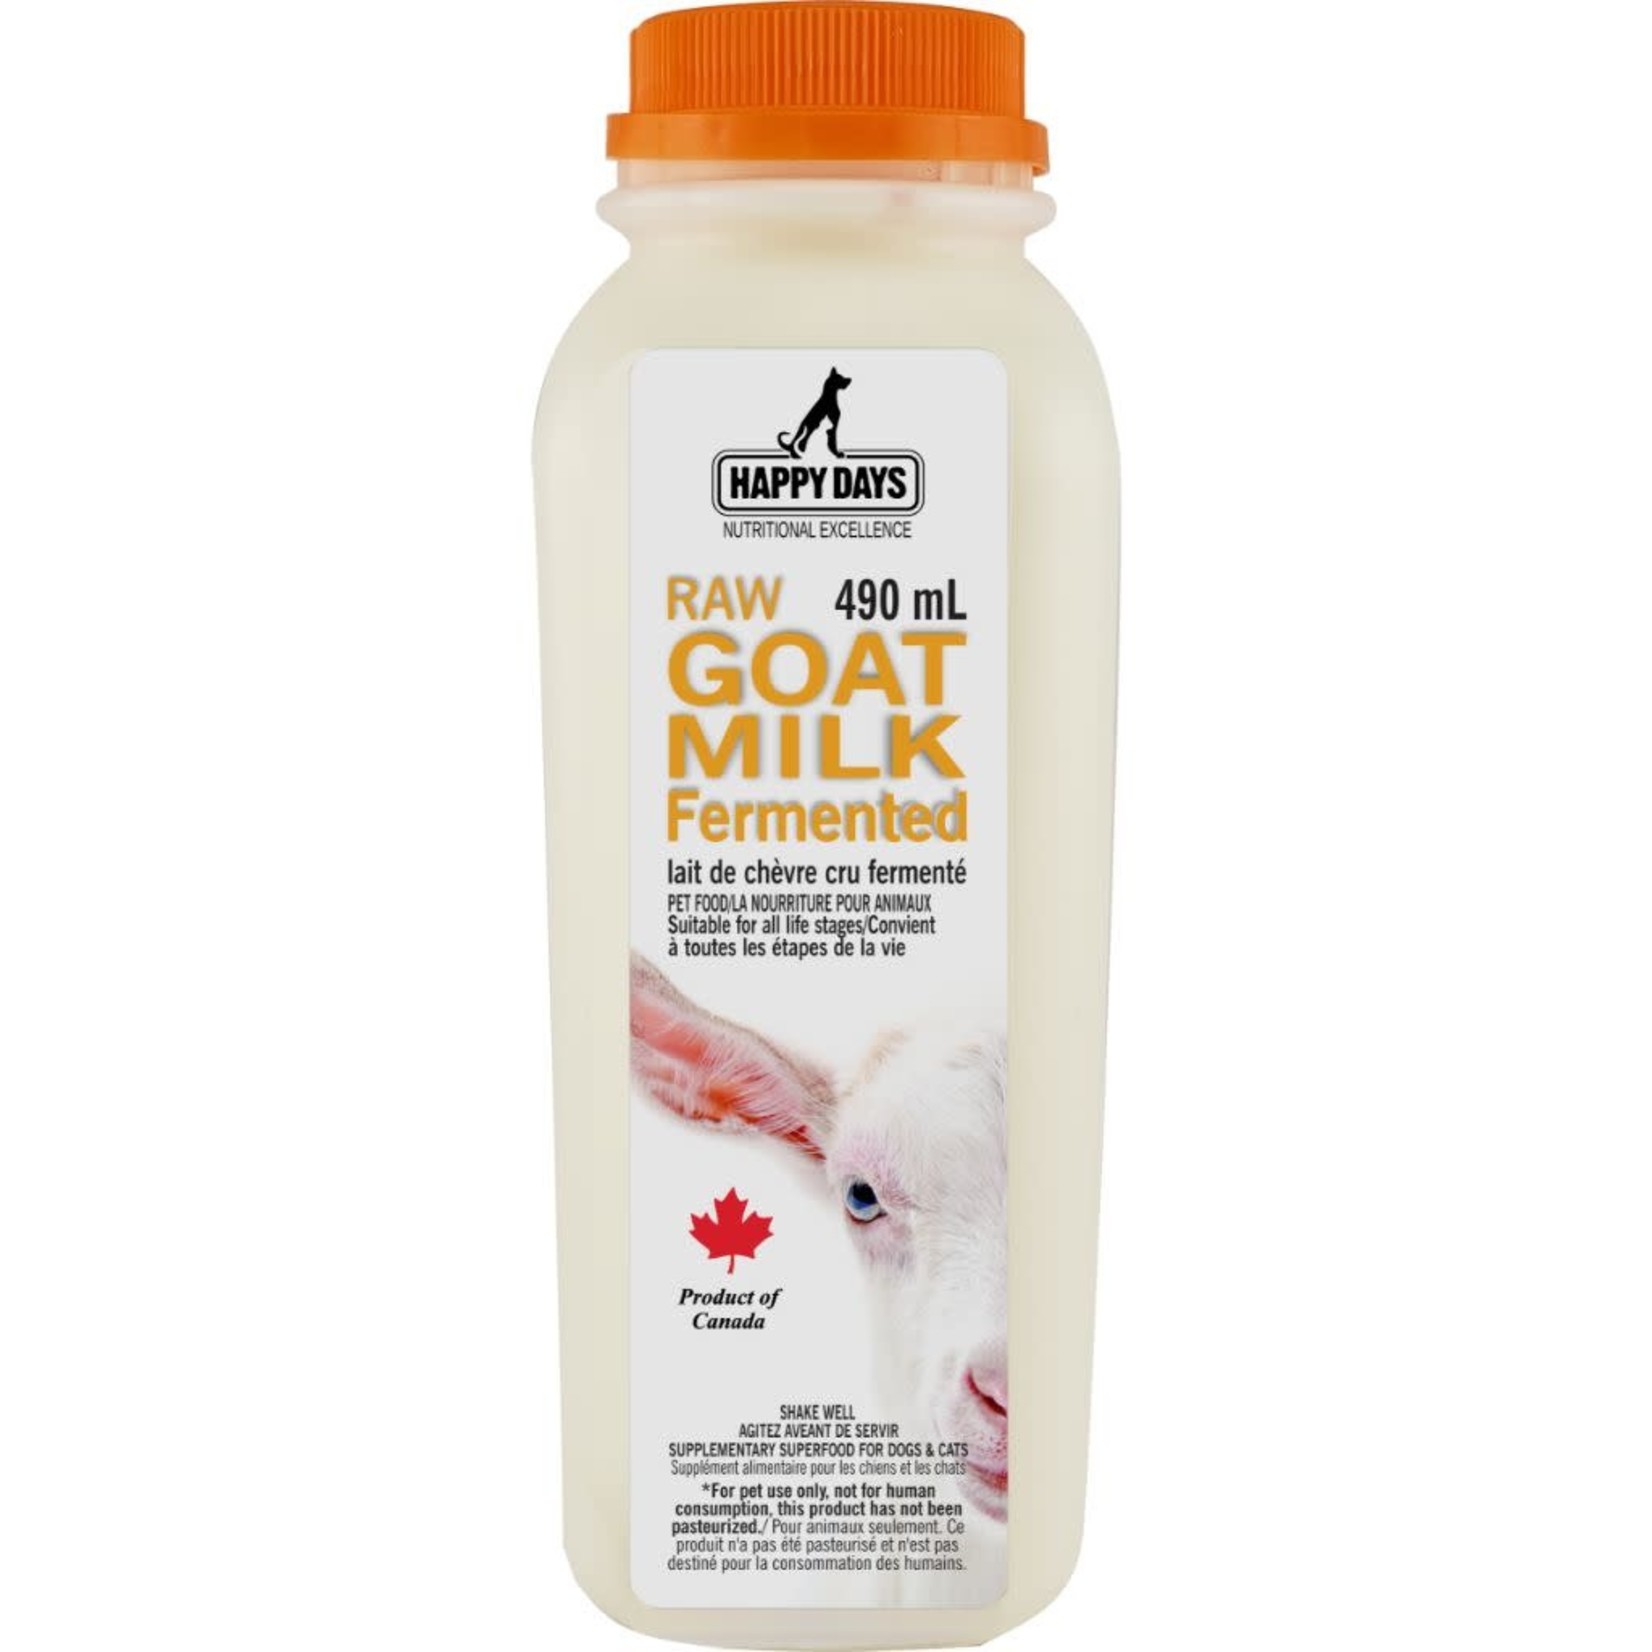 Happy Days Dairies Raw Fermented Goat Milk 490mL - Frozen